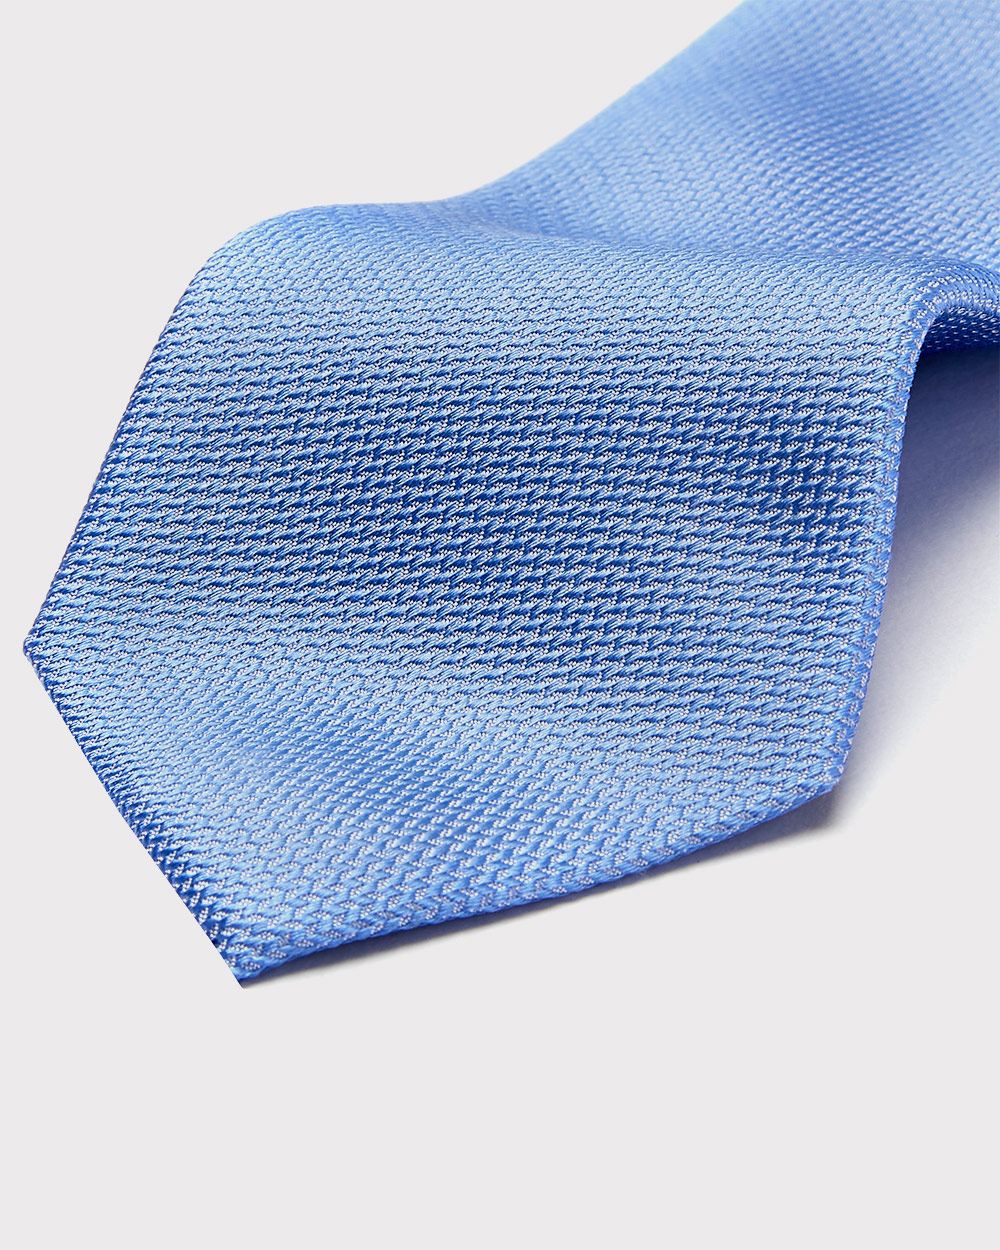 Regular light blue tie